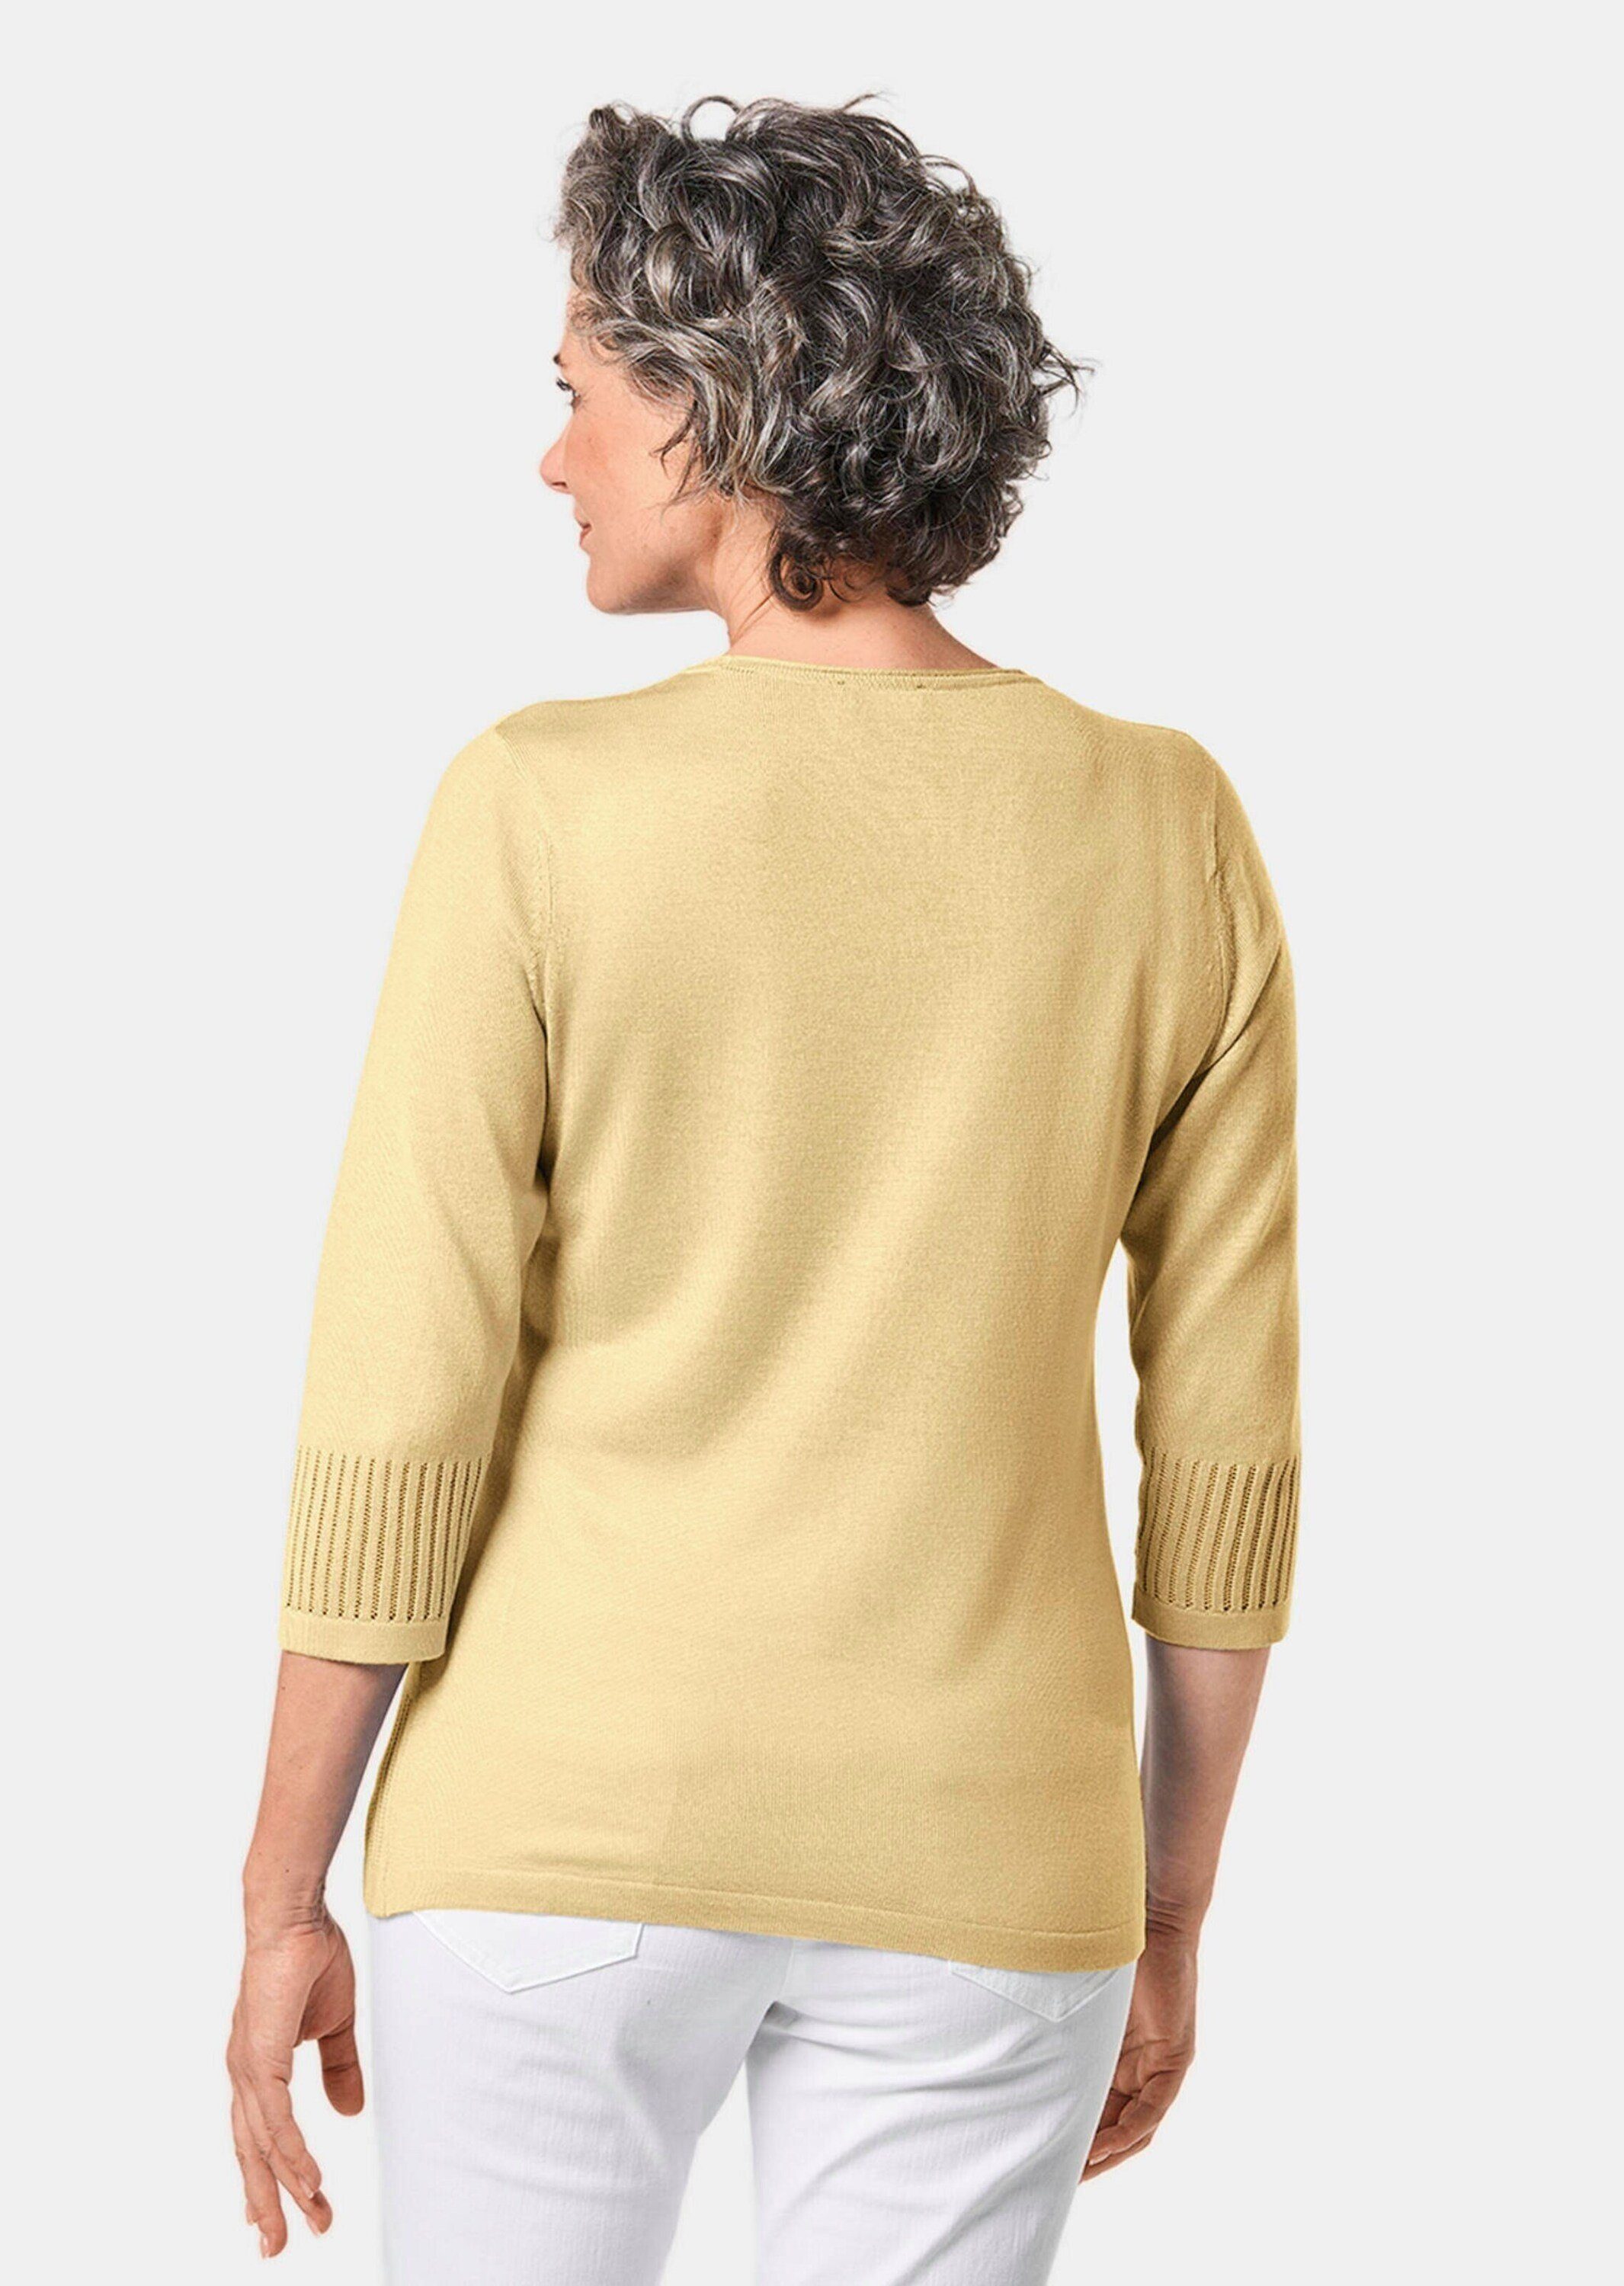 GOLDNER 3/4 pastellgelb mit Arm-Pullover Ajour-Pullover Gepflegter femininen Durchbrüchen